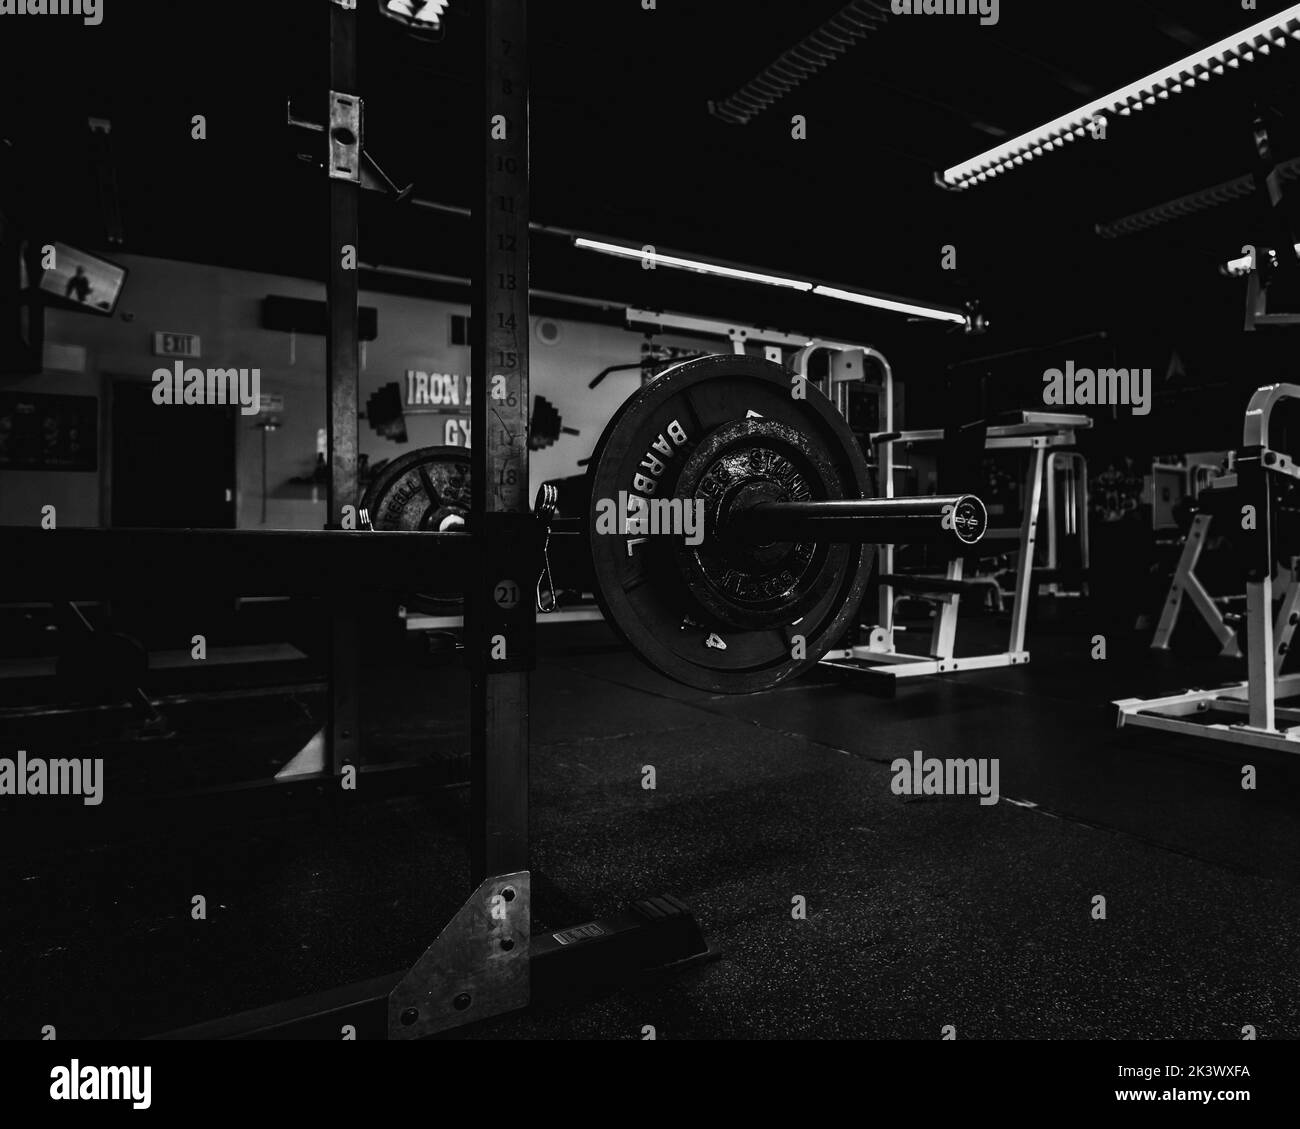 Une salle de gym en niveaux de gris avec vue à l'intérieur avec une barbell et d'autres pièces d'équipement autour Banque D'Images